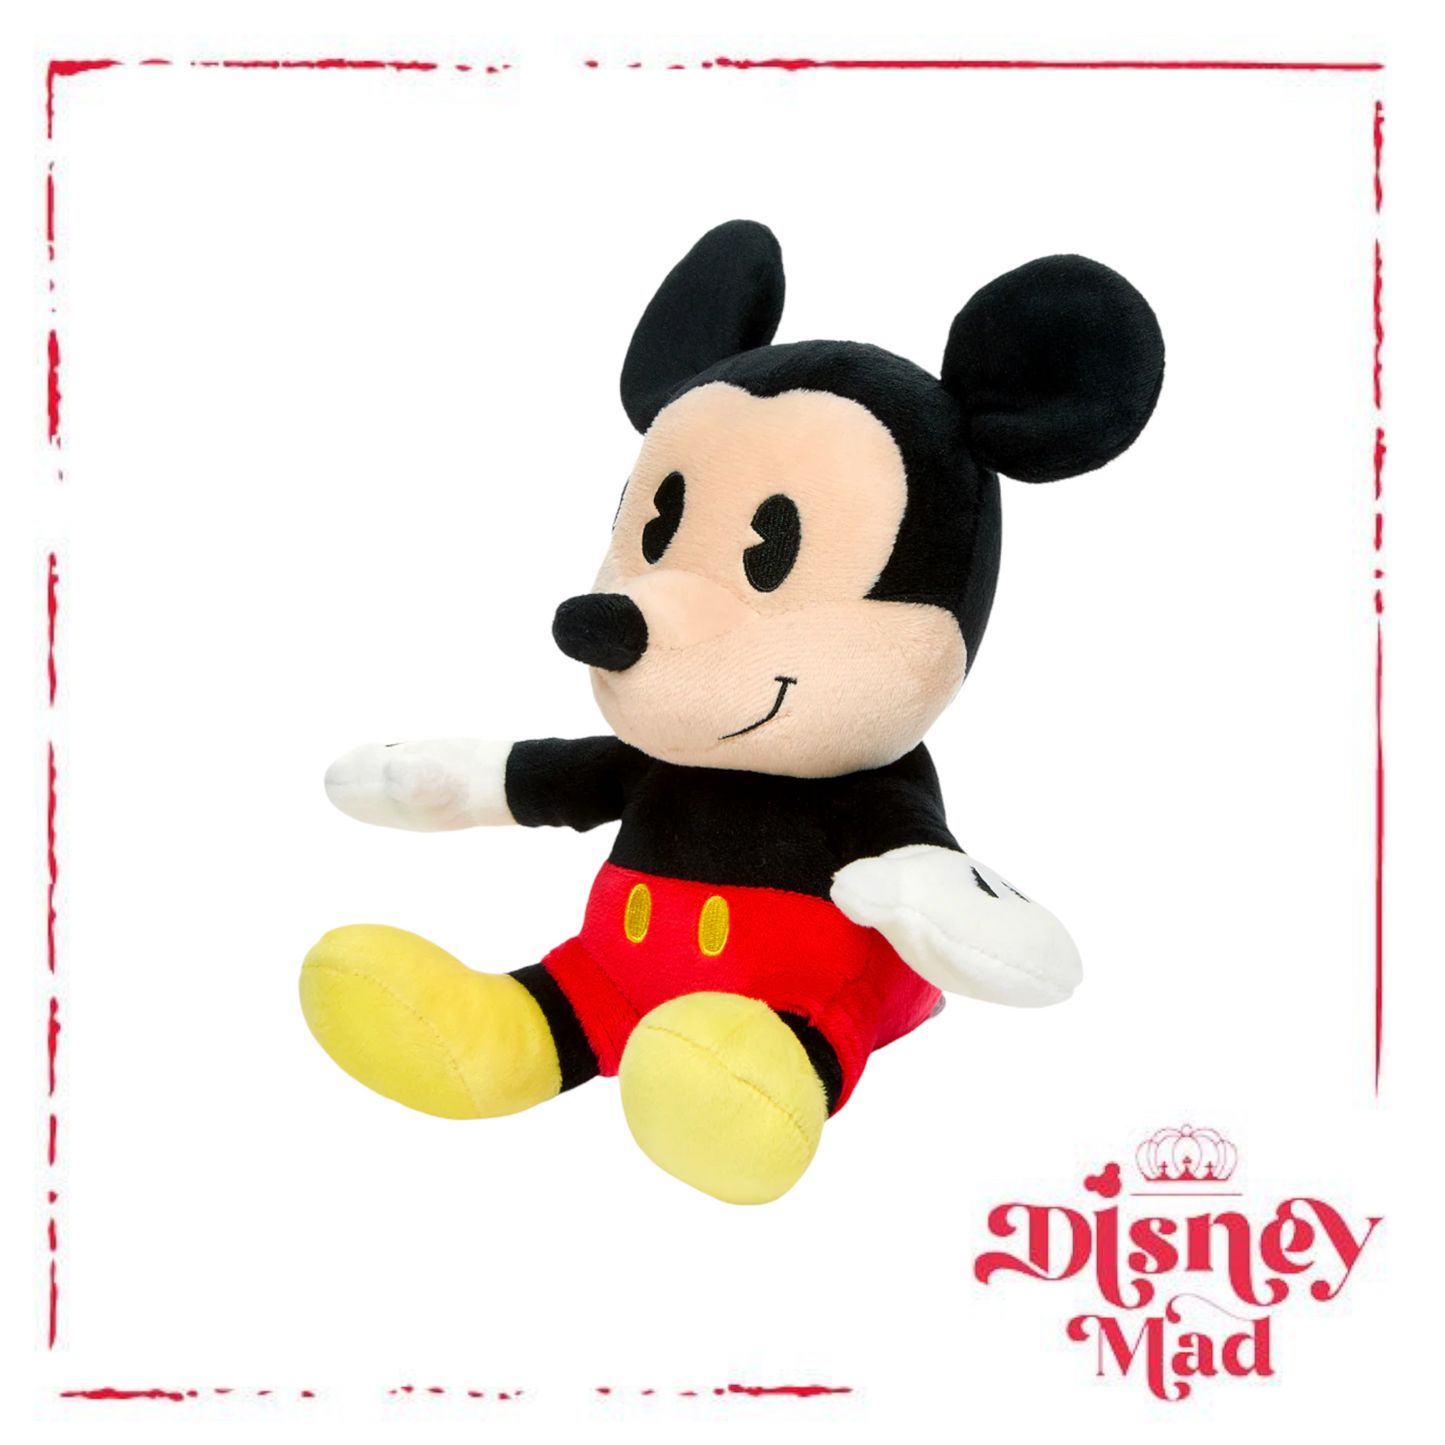 Disney Mickey Mouse Phunny Plush